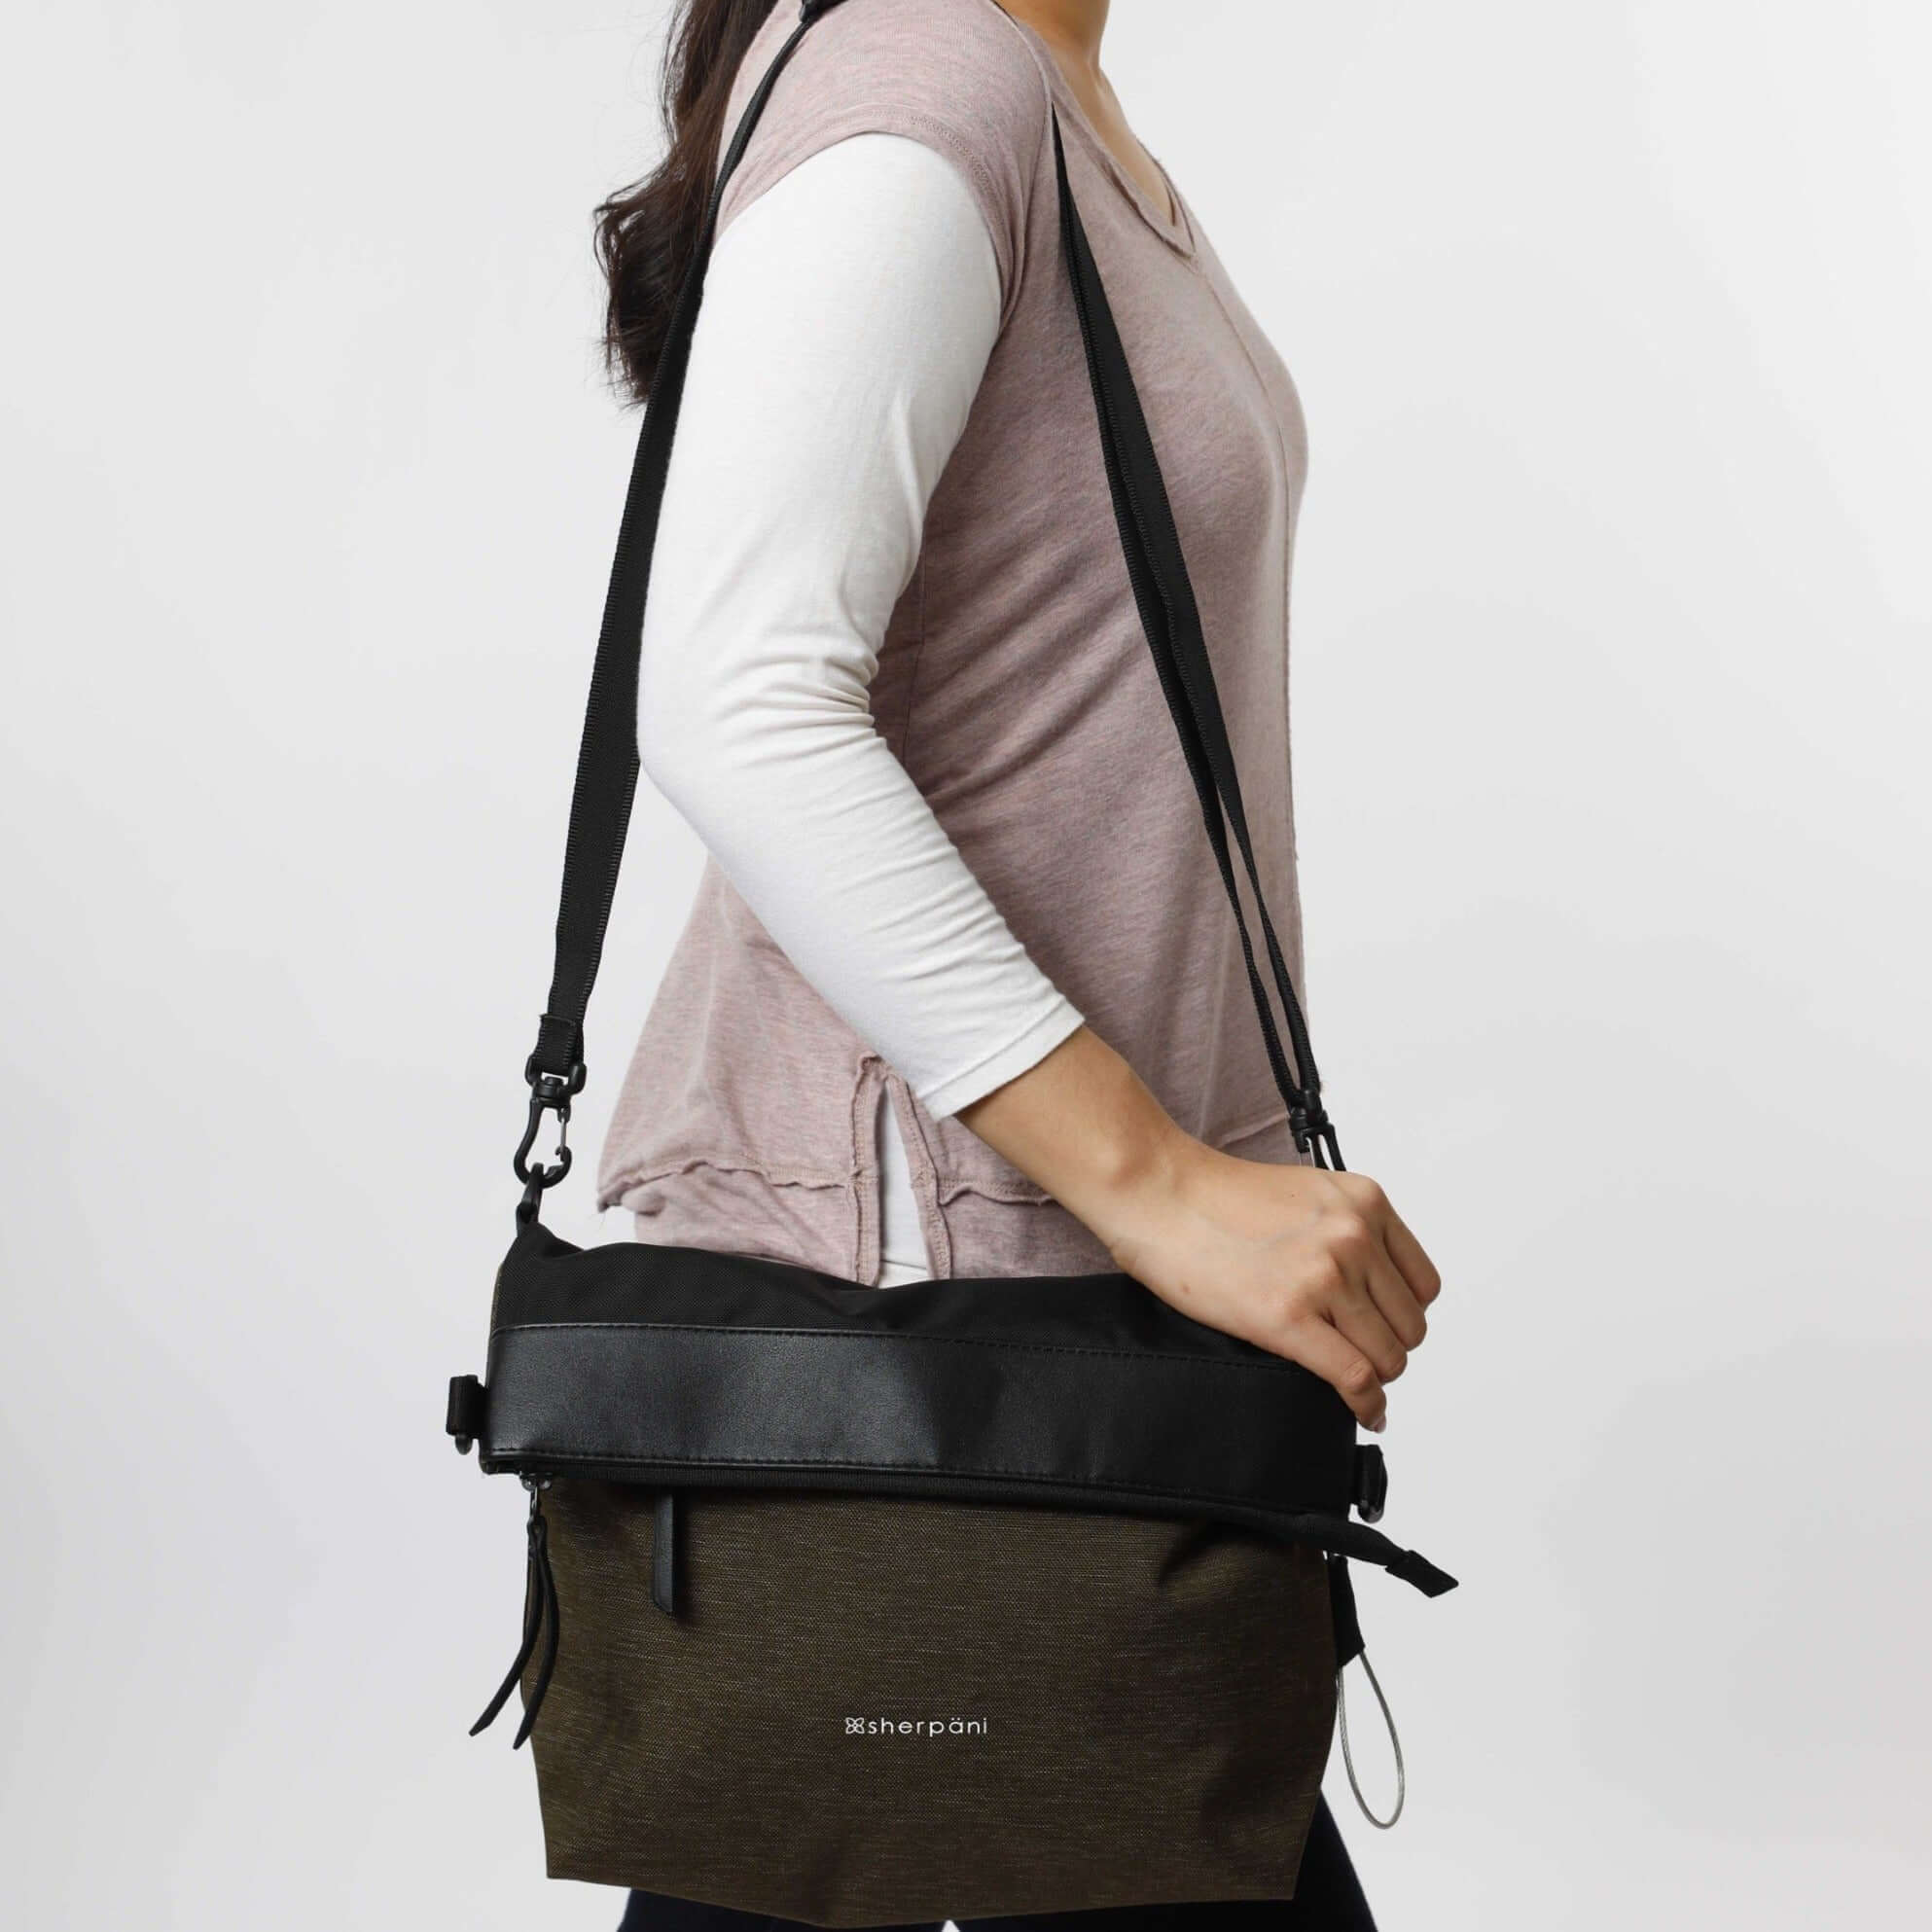 Crossbody Bag Shoulder Strap in Pink Leopard | Groovy's | Bag Strap